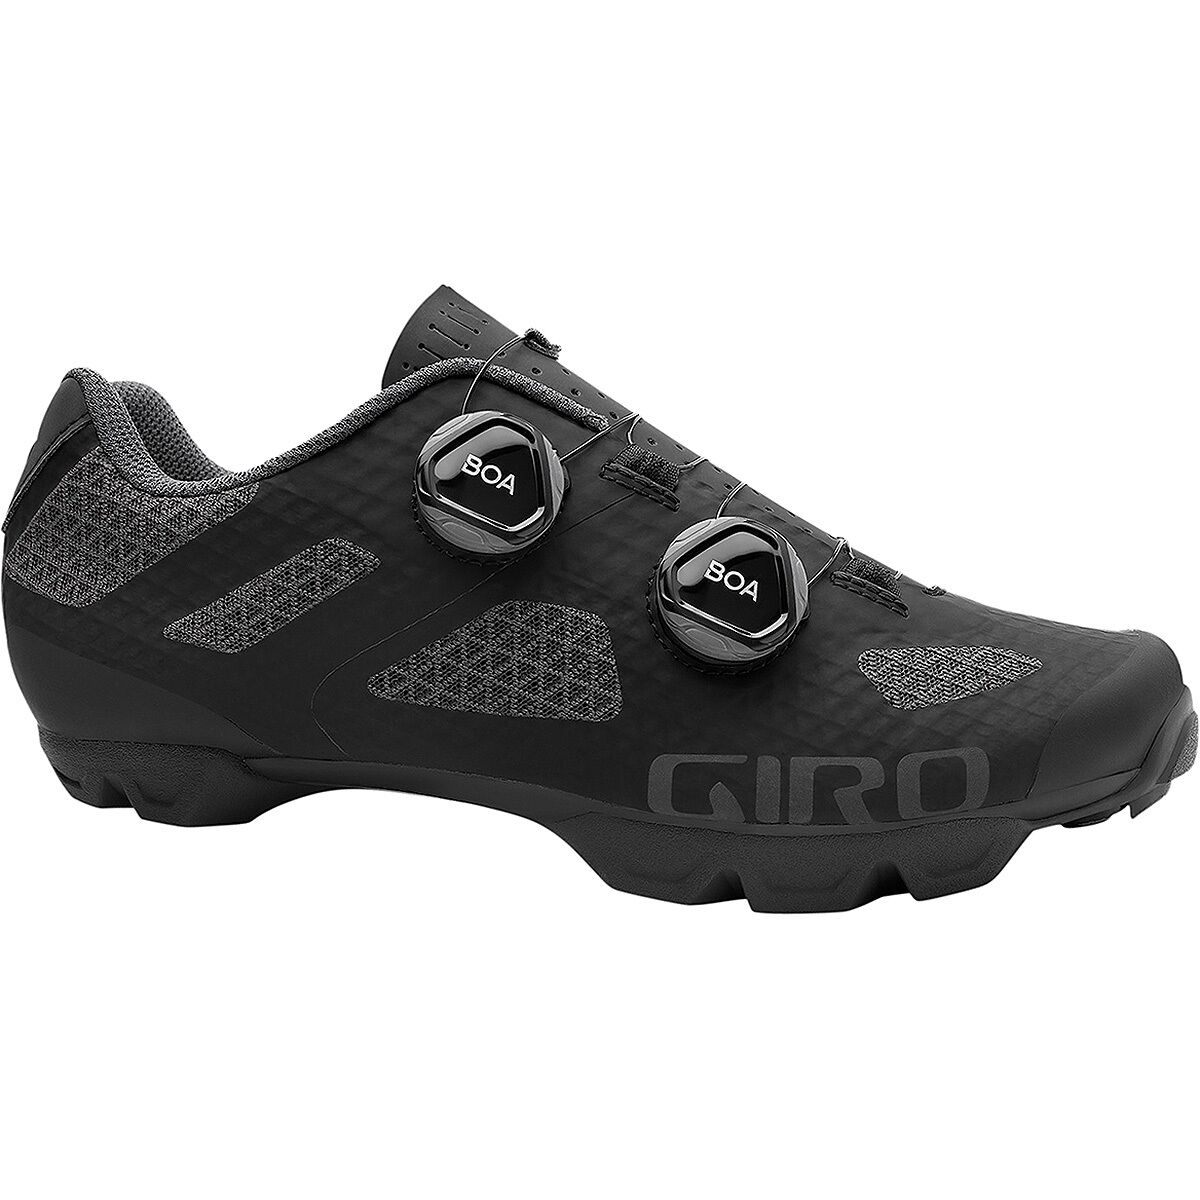 Giro Sector Mountain Bike Shoe - Women's Black/Dark Shadow, 43.0